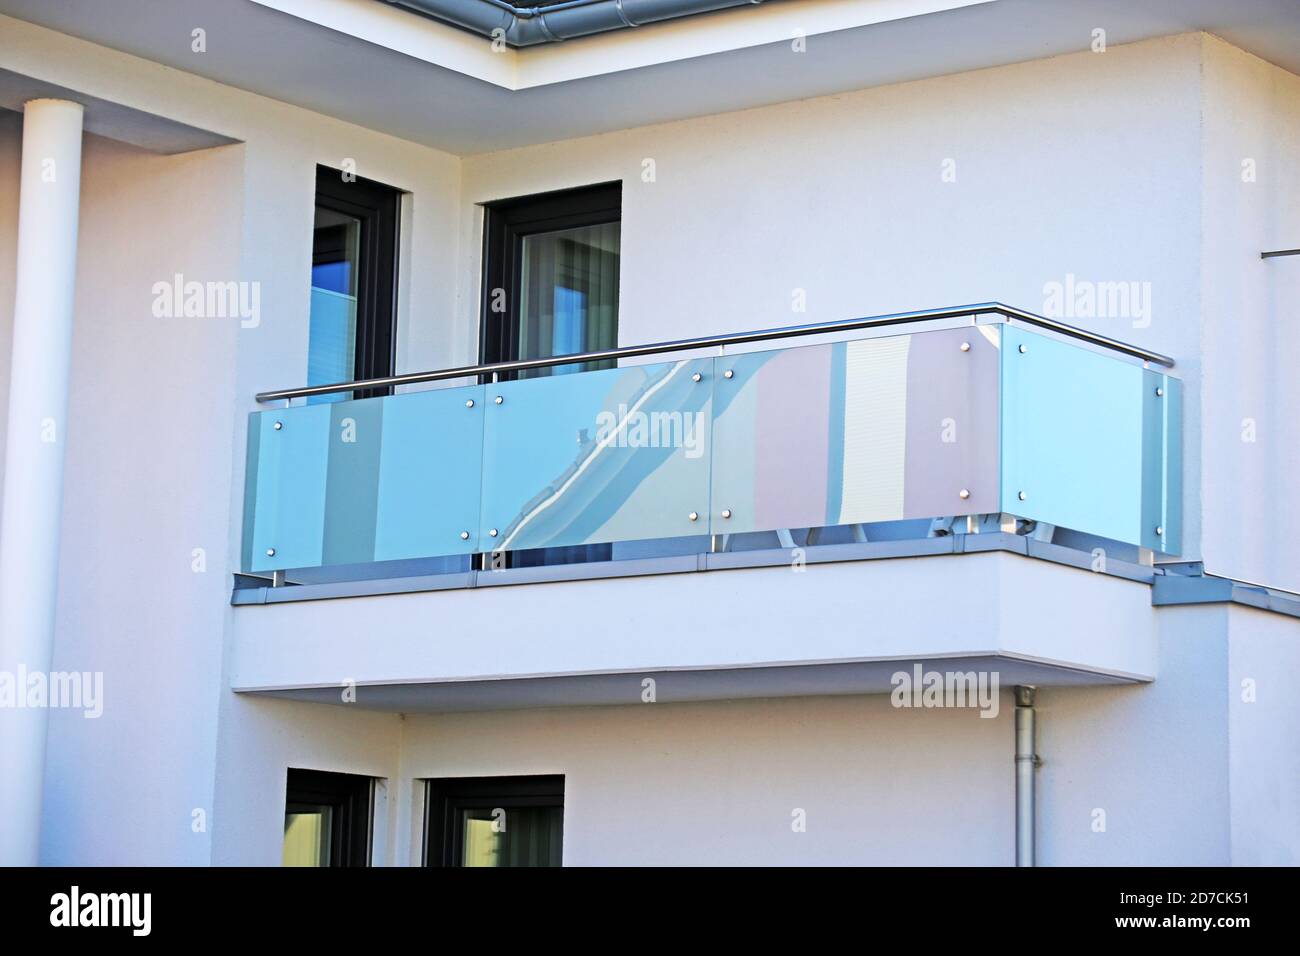 New modern glass balcony railing Stock Photo - Alamy